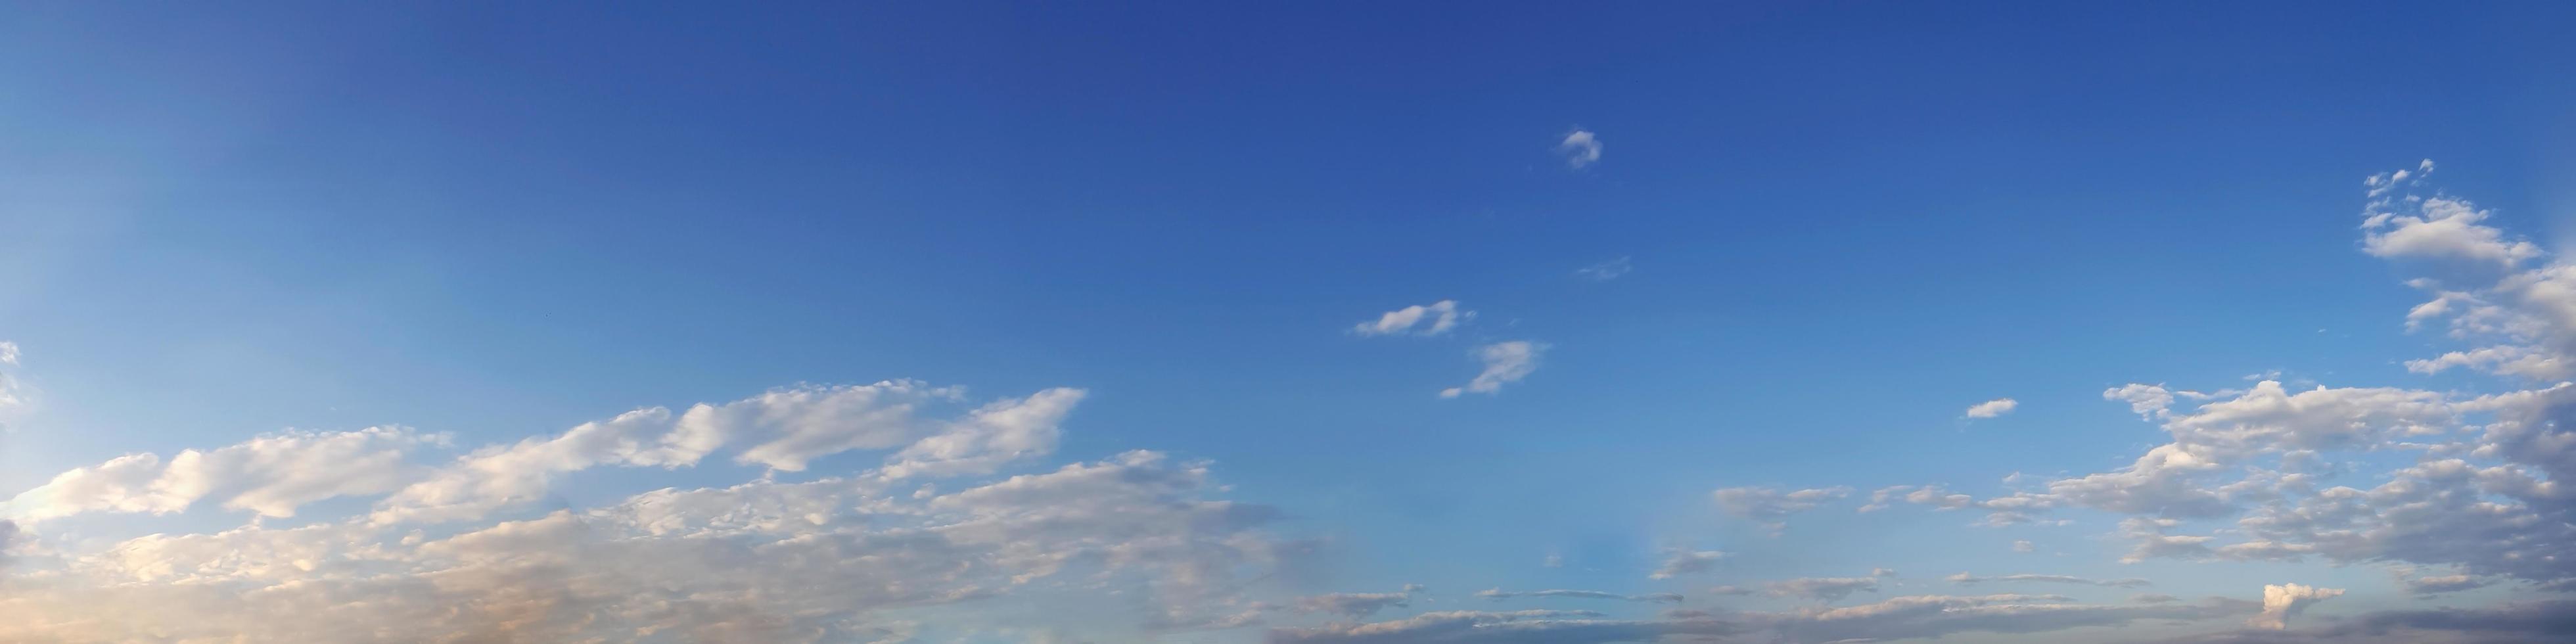 céu panorâmico de cor vibrante com nuvem em um dia ensolarado. foto